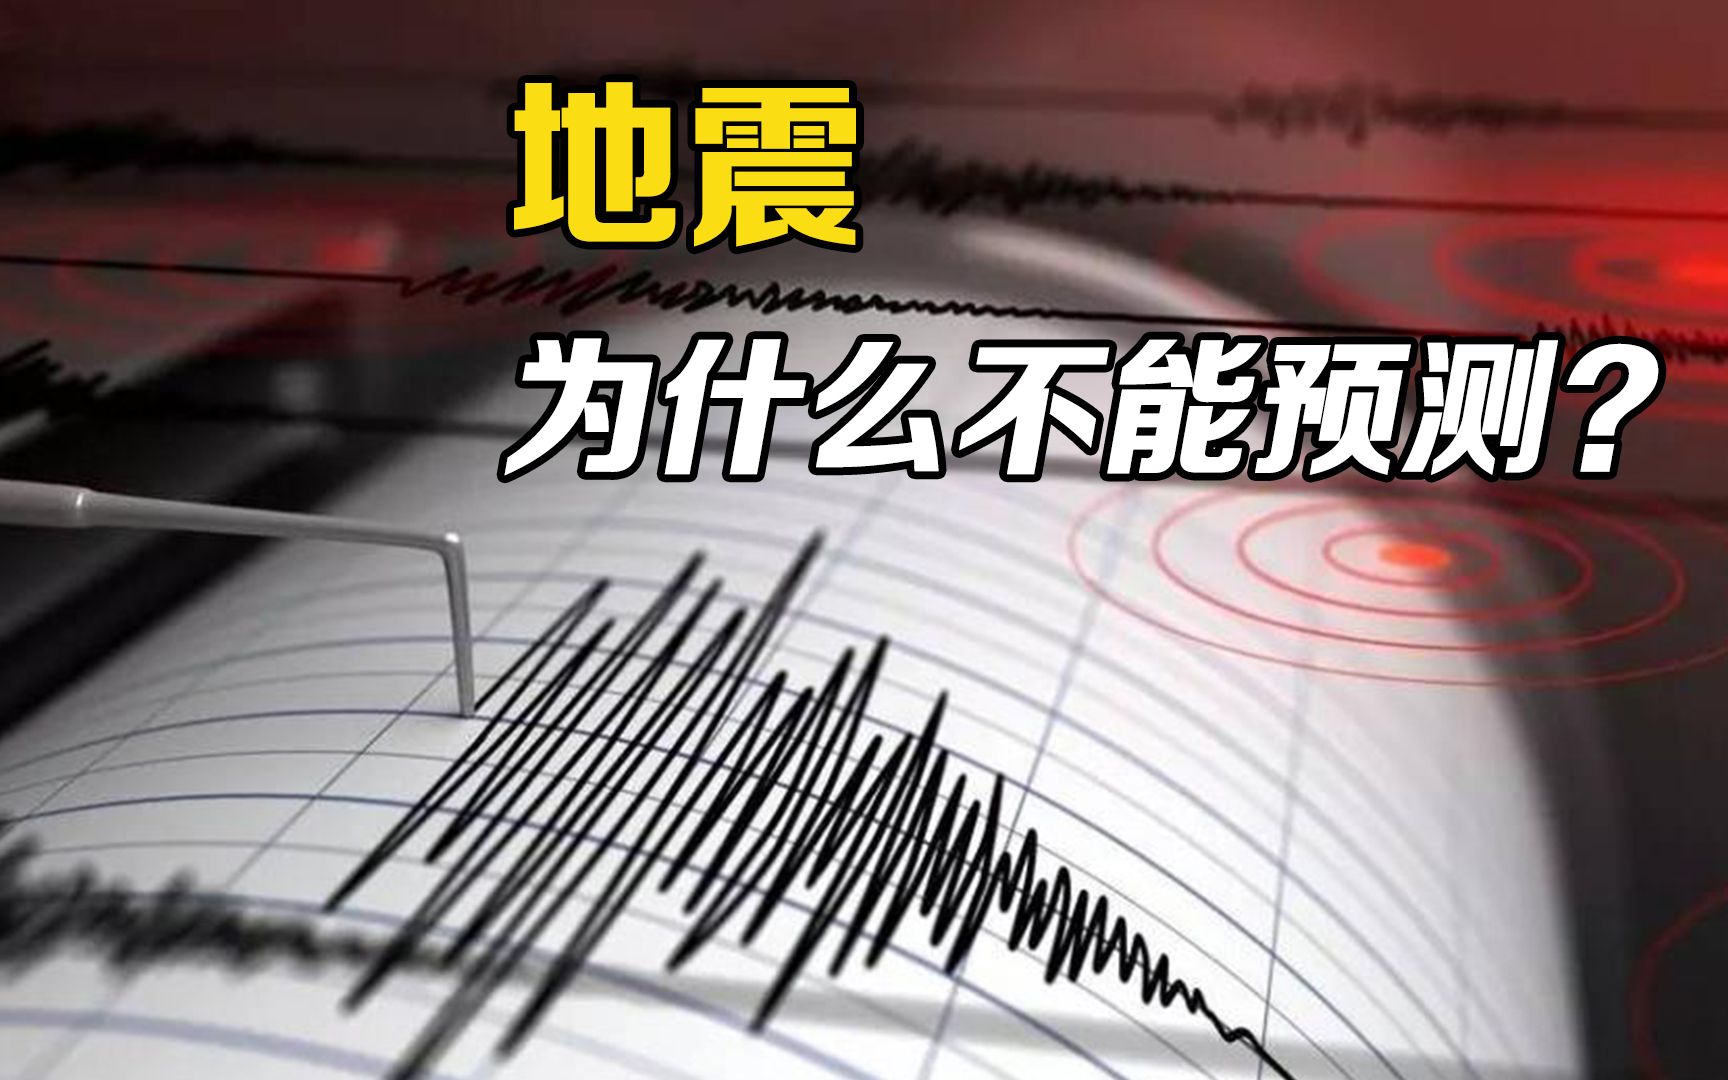 上海地震